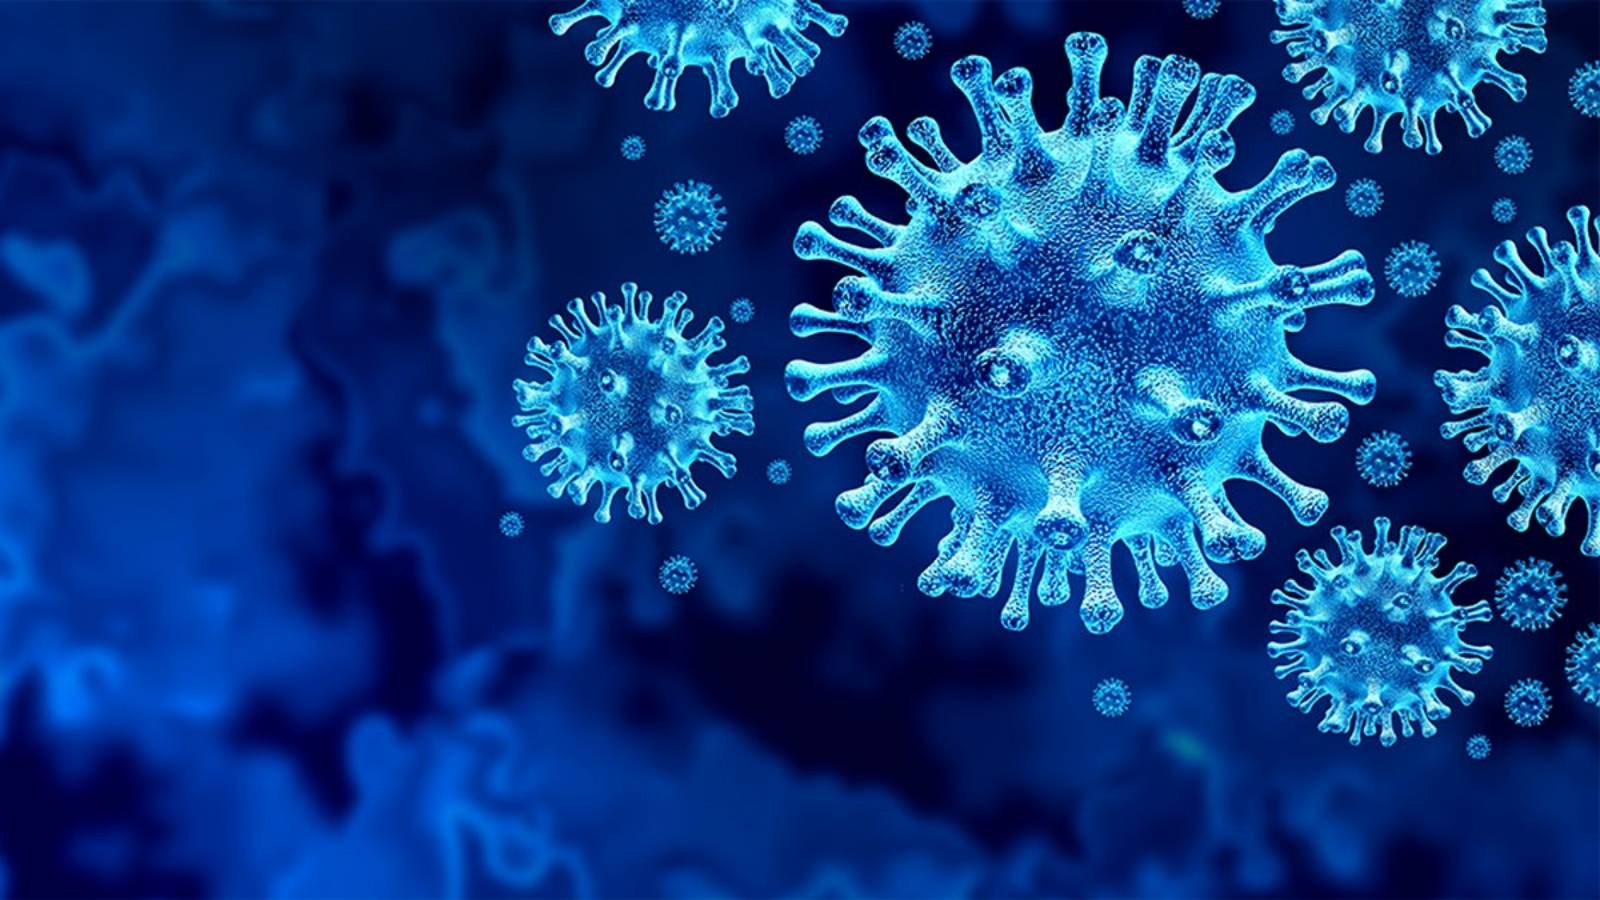 coronavirus Roumanie, les nouveaux cas, les guérisons, le 6 septembre